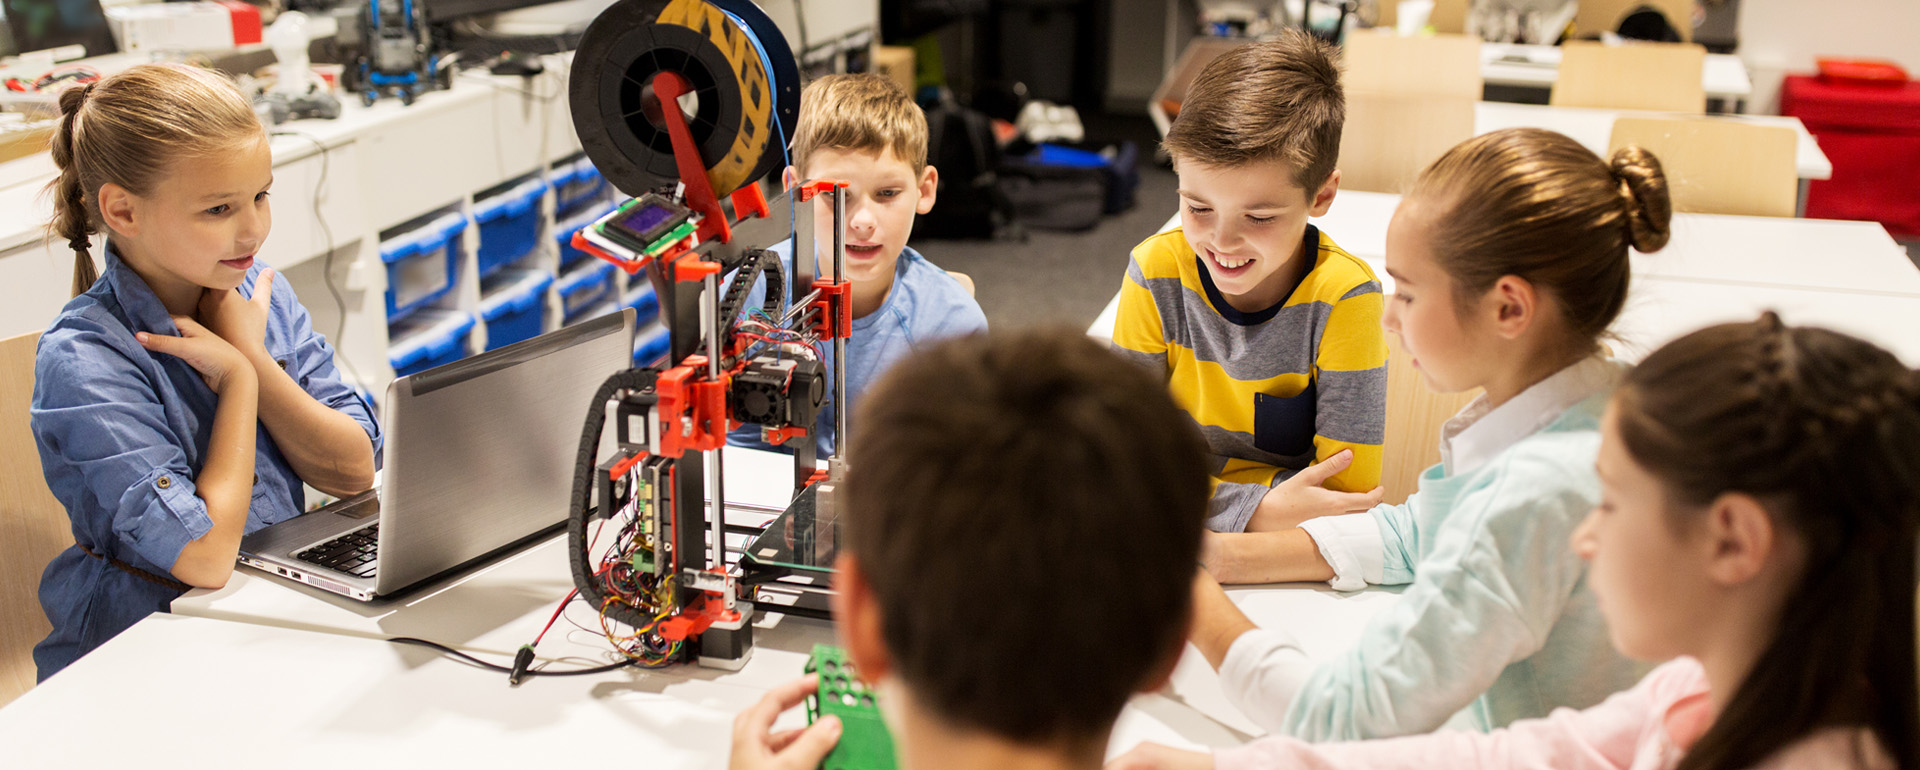 Курсы робототехники для детей Arduino - фотография